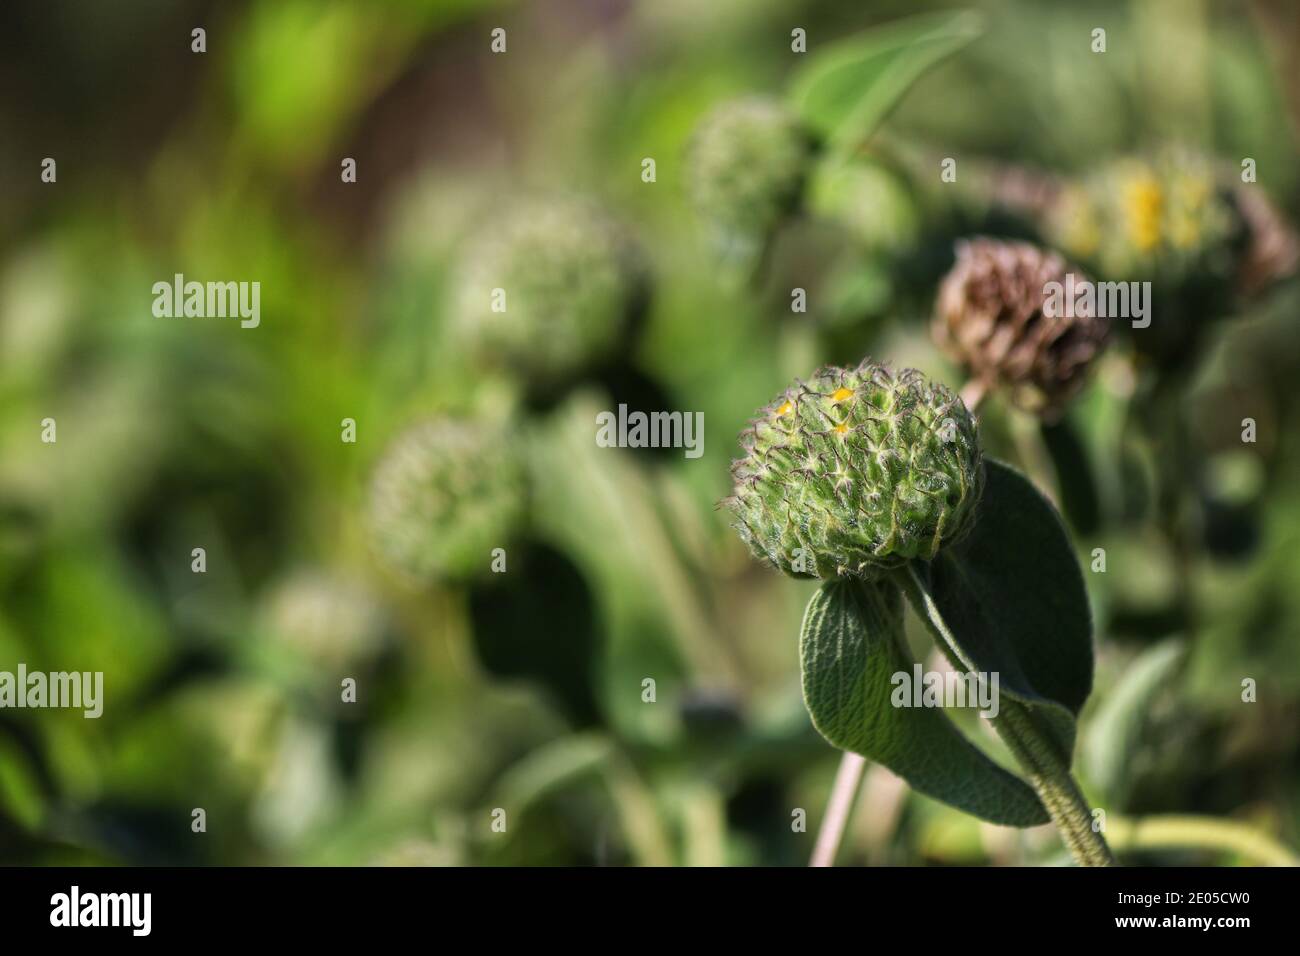 Una pianta comincia a fiorire in una serie di gemme verdi fluffy, circolari mentre la luce solare calda della molla cade su loro. Foto Stock